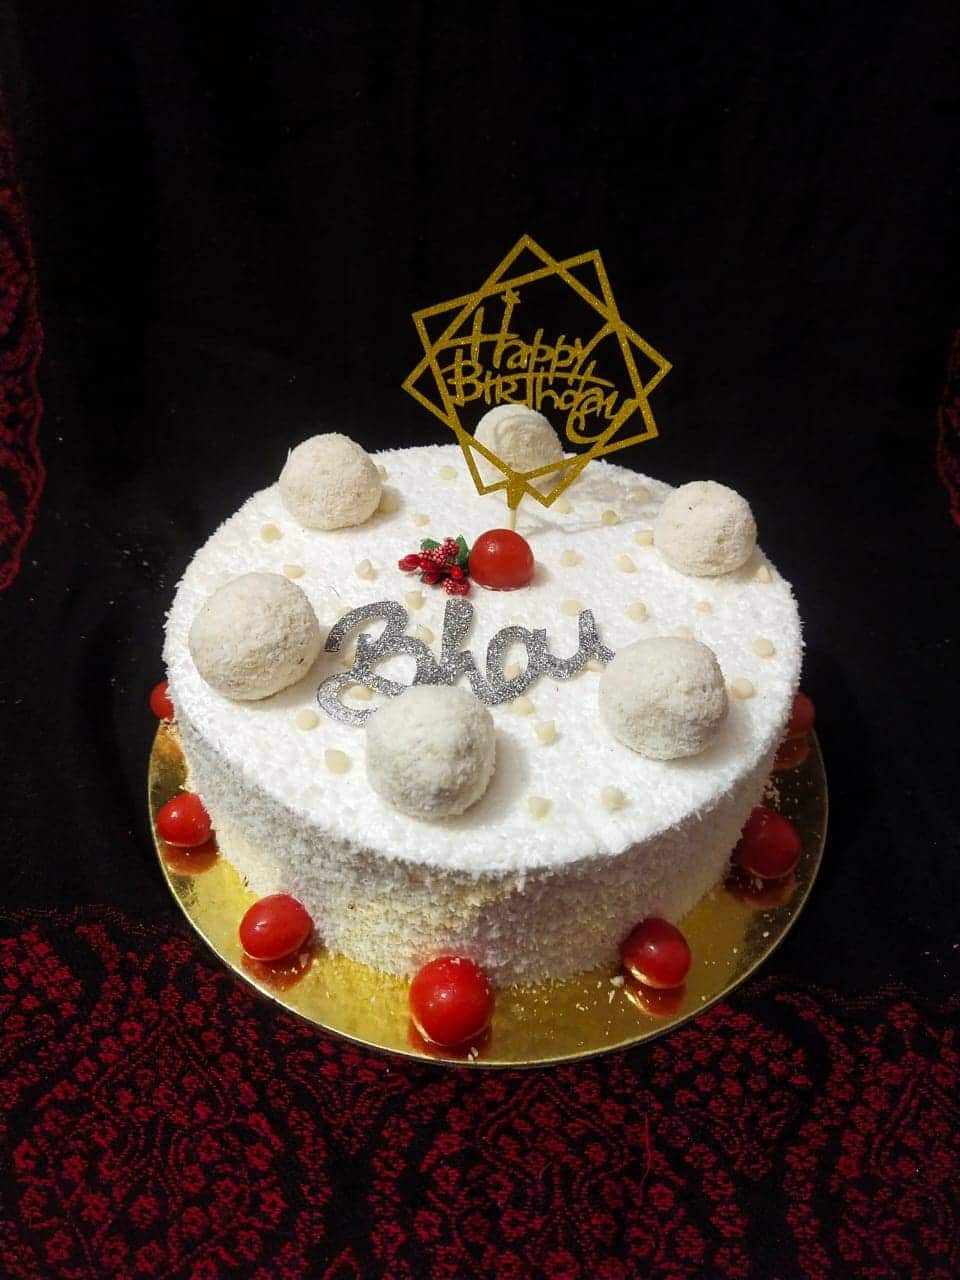 केक रेसिपी | Cake Recipe in Hindi